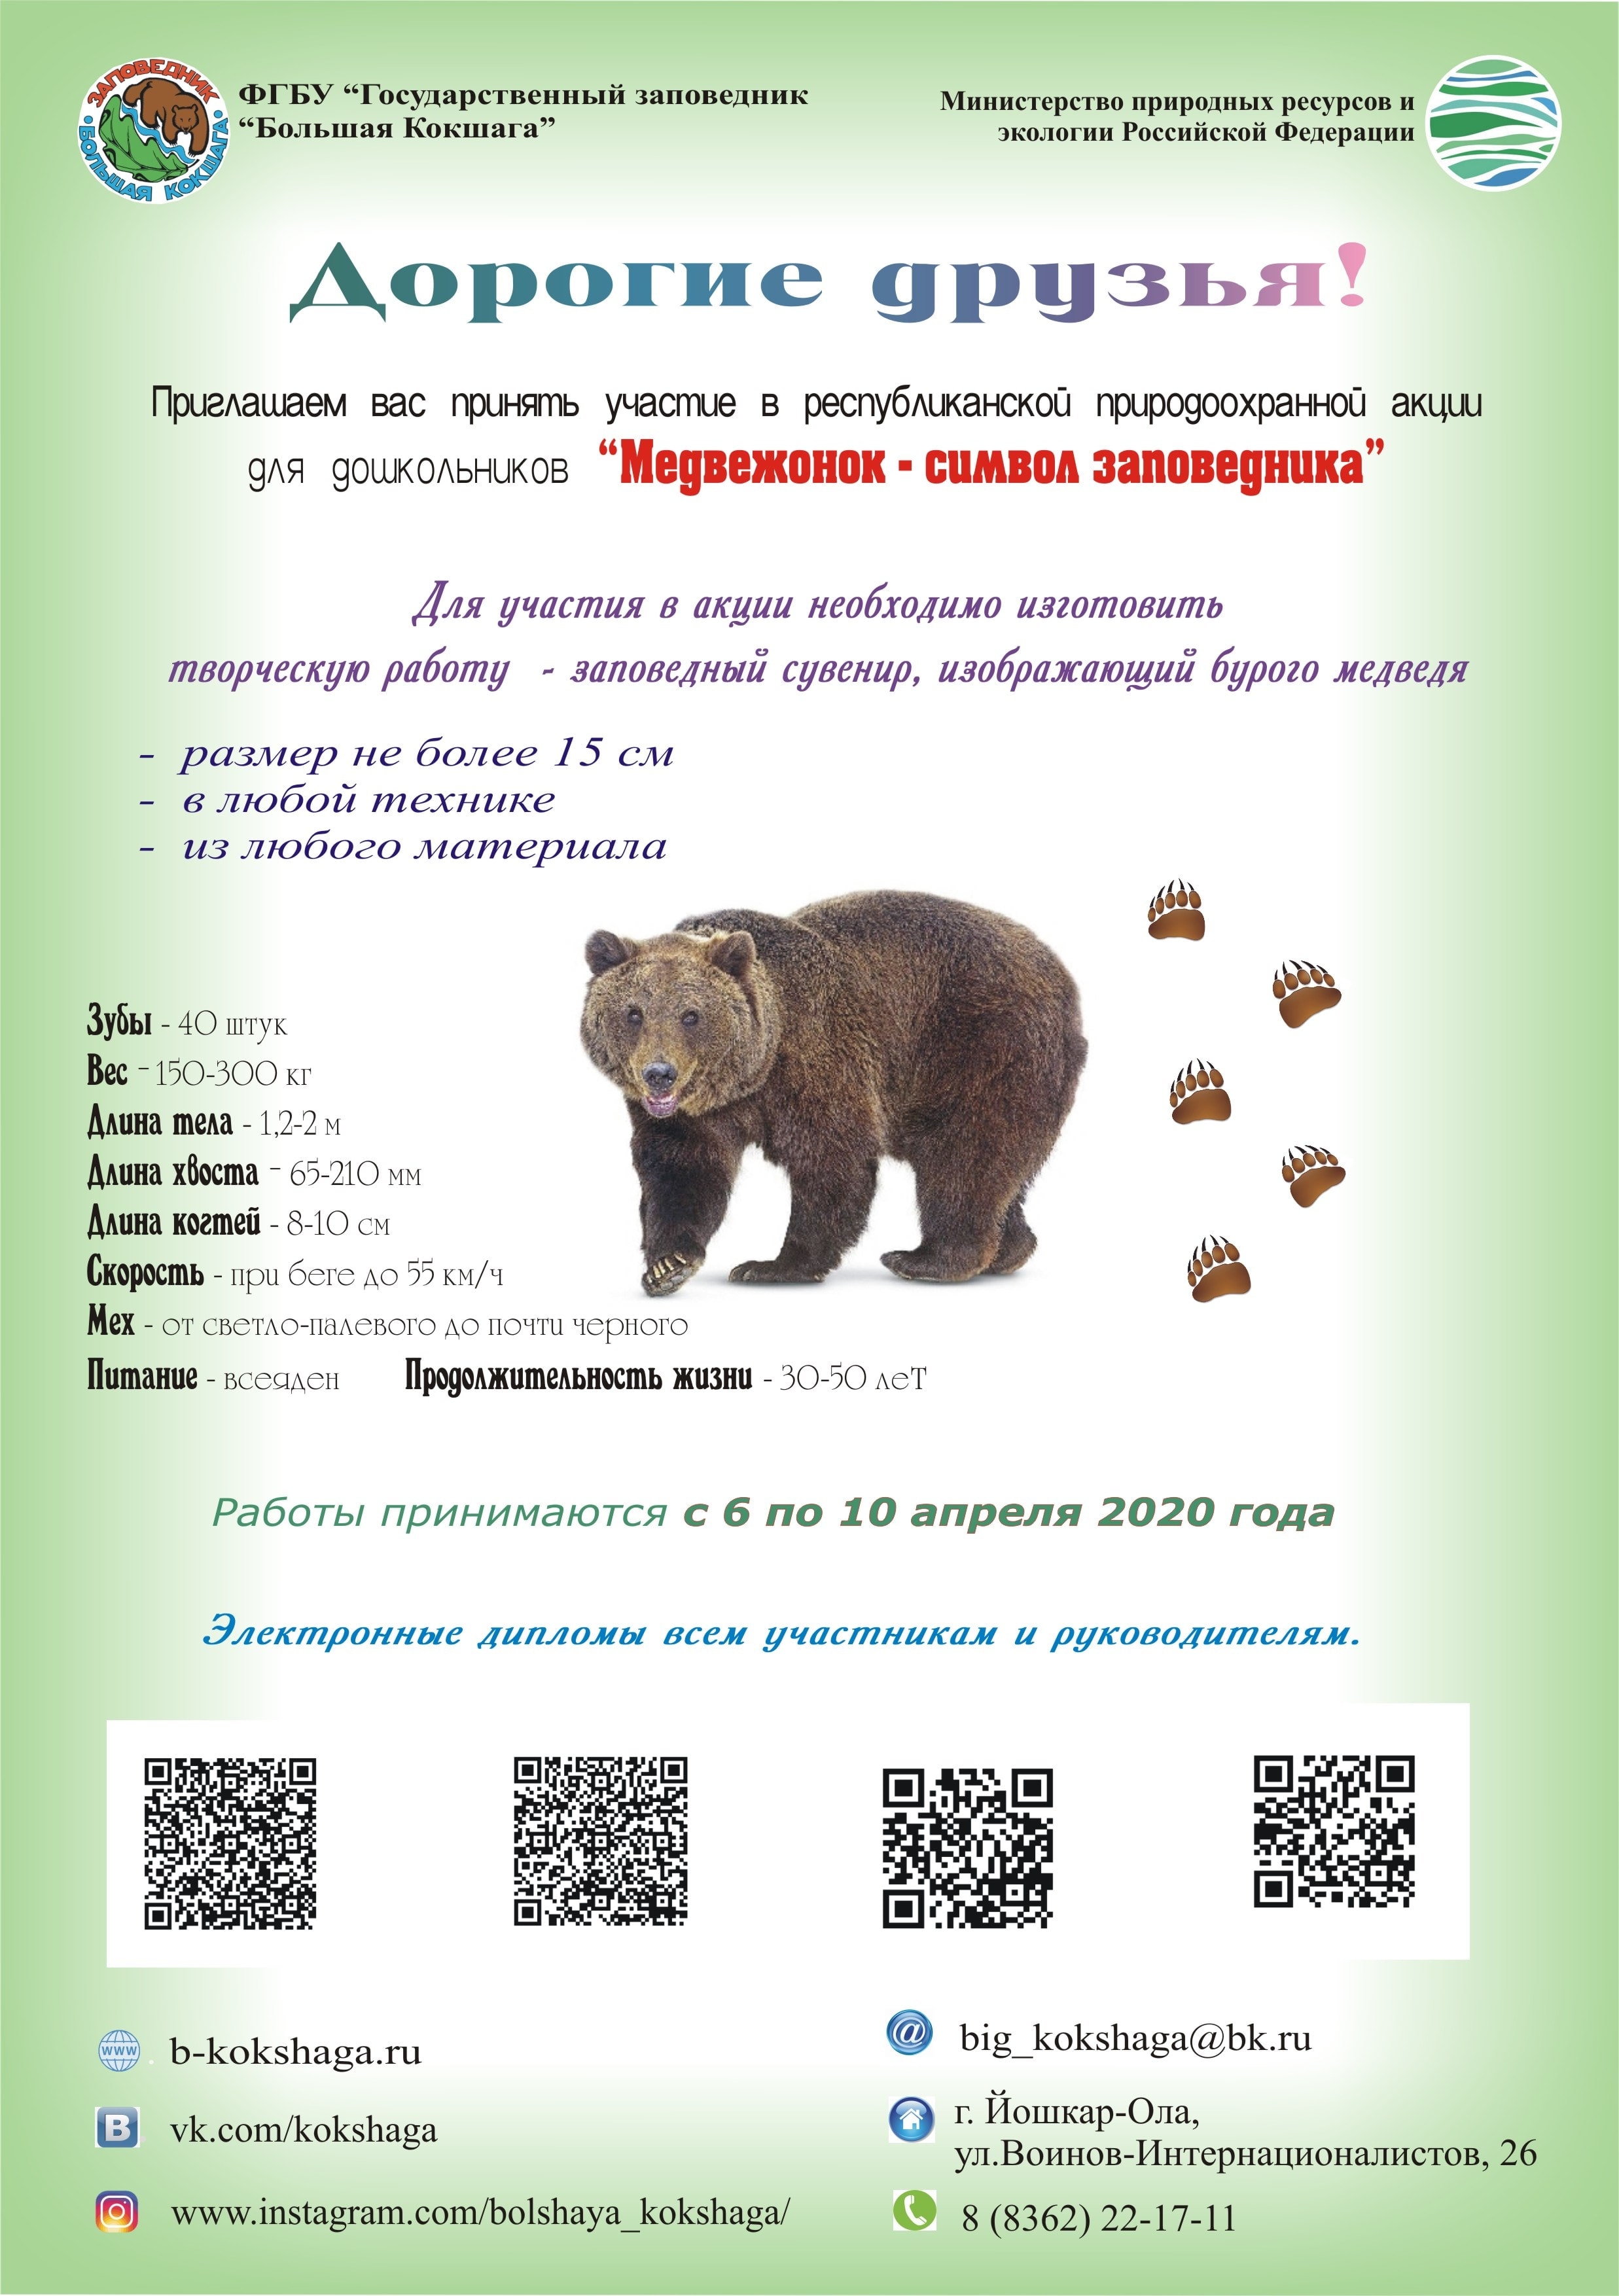 Приглашаем принять участие в акции "Медвежонок-символ заповедника"